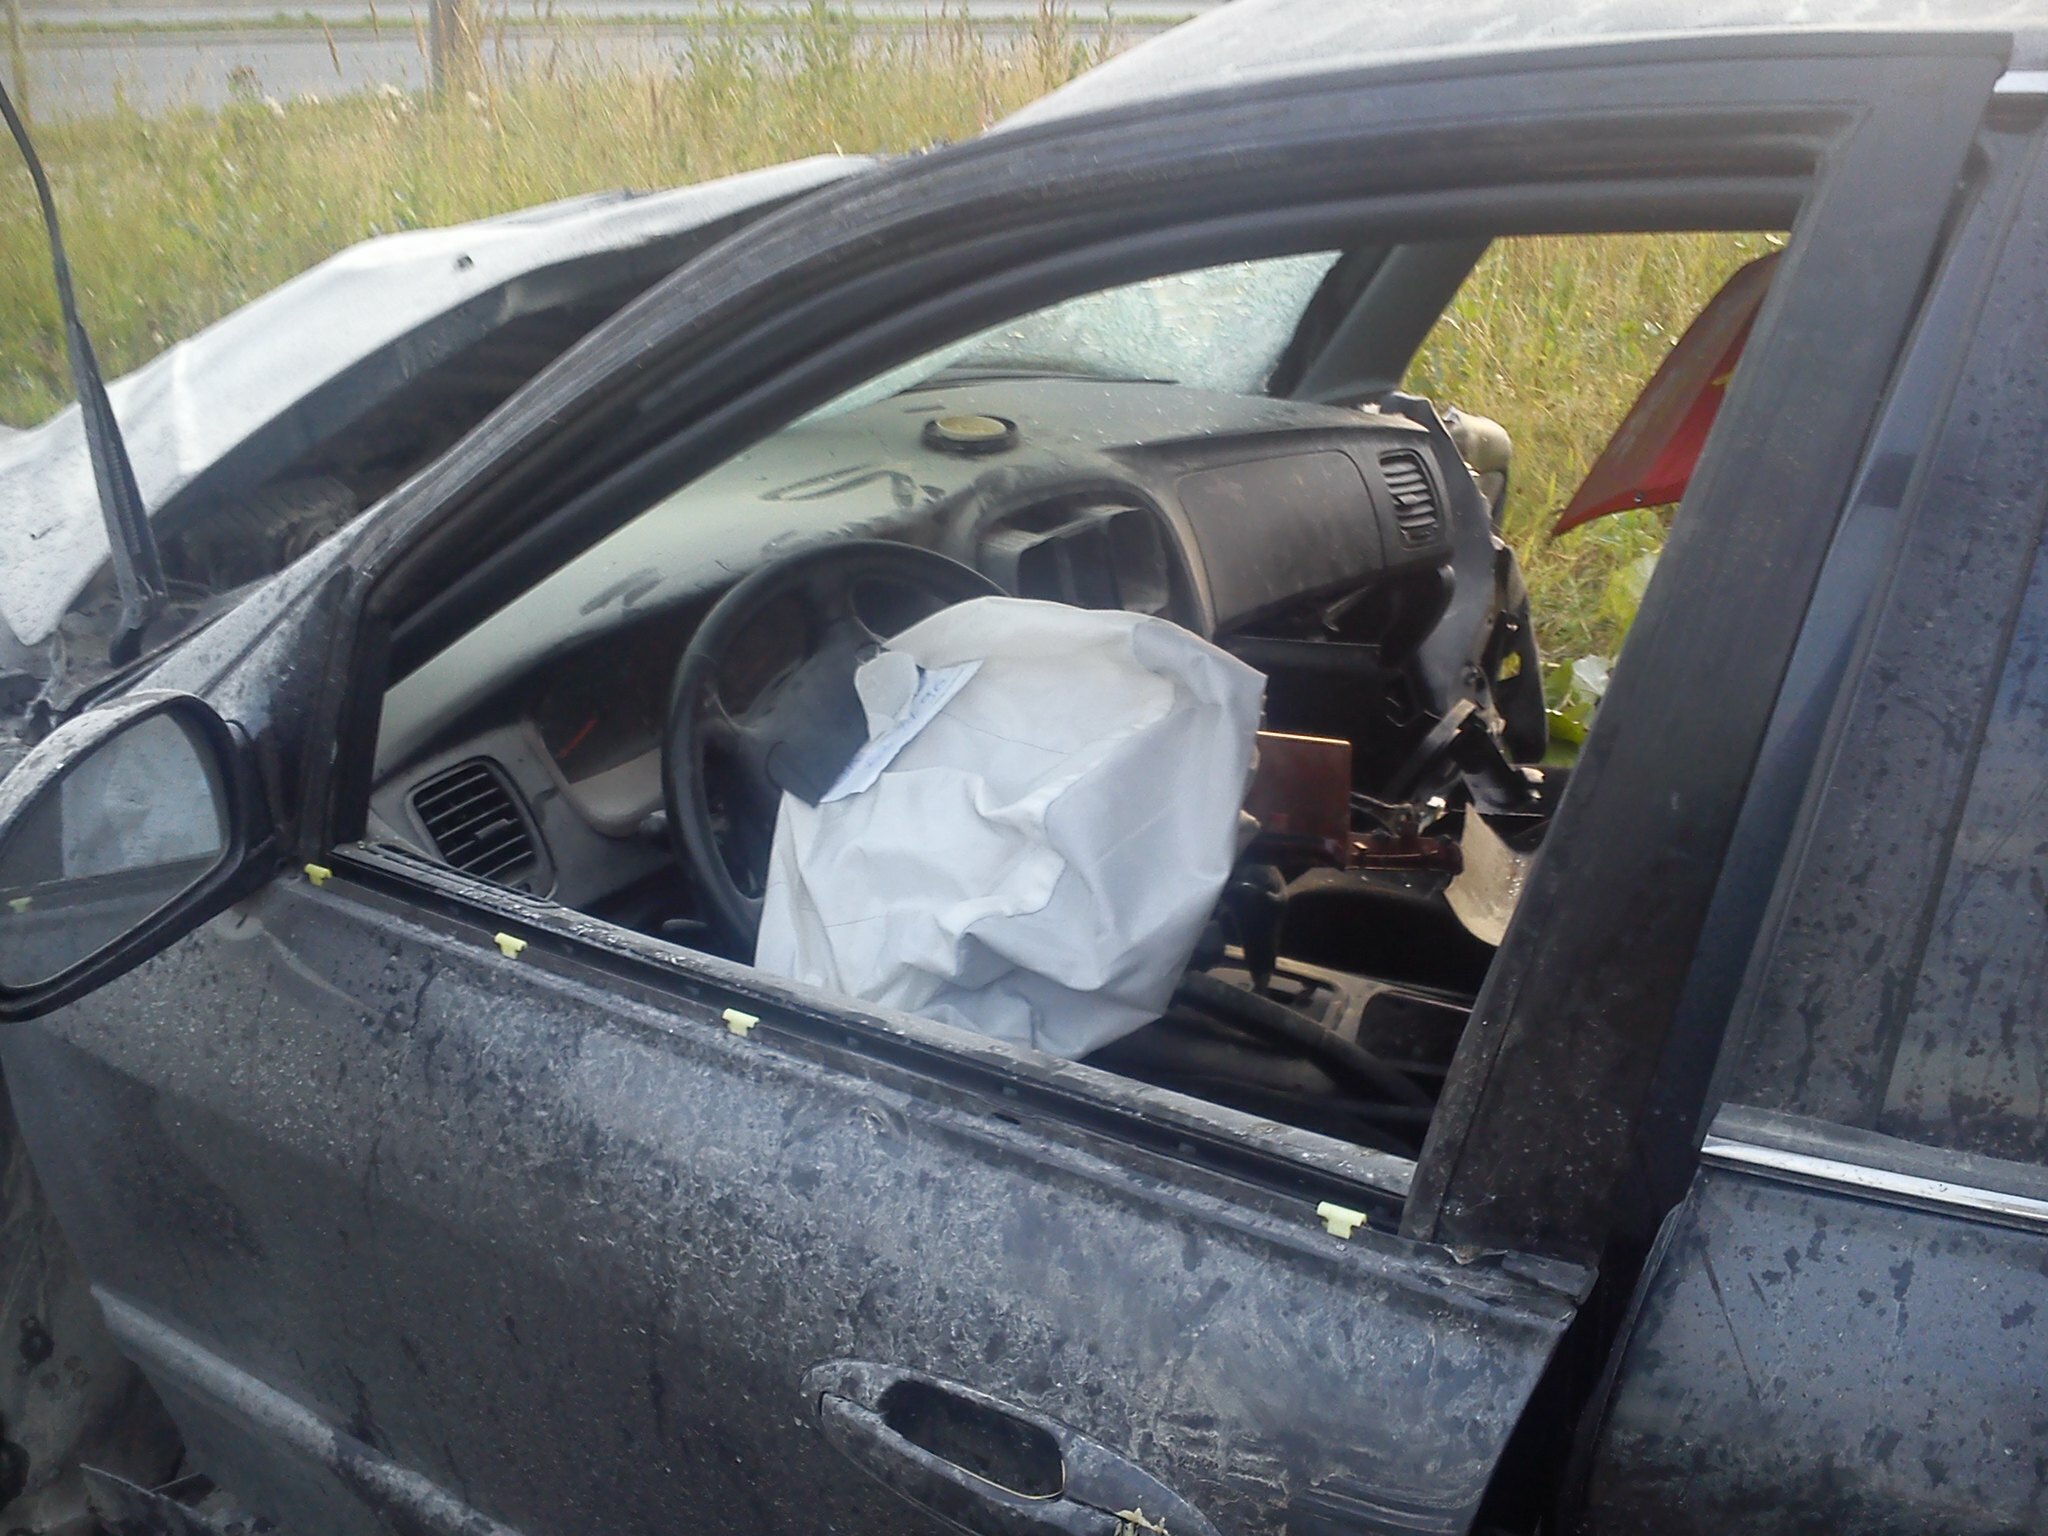 Автопрогулка по ночному Хабаровску обернулась для девушки-водителя реанимацией